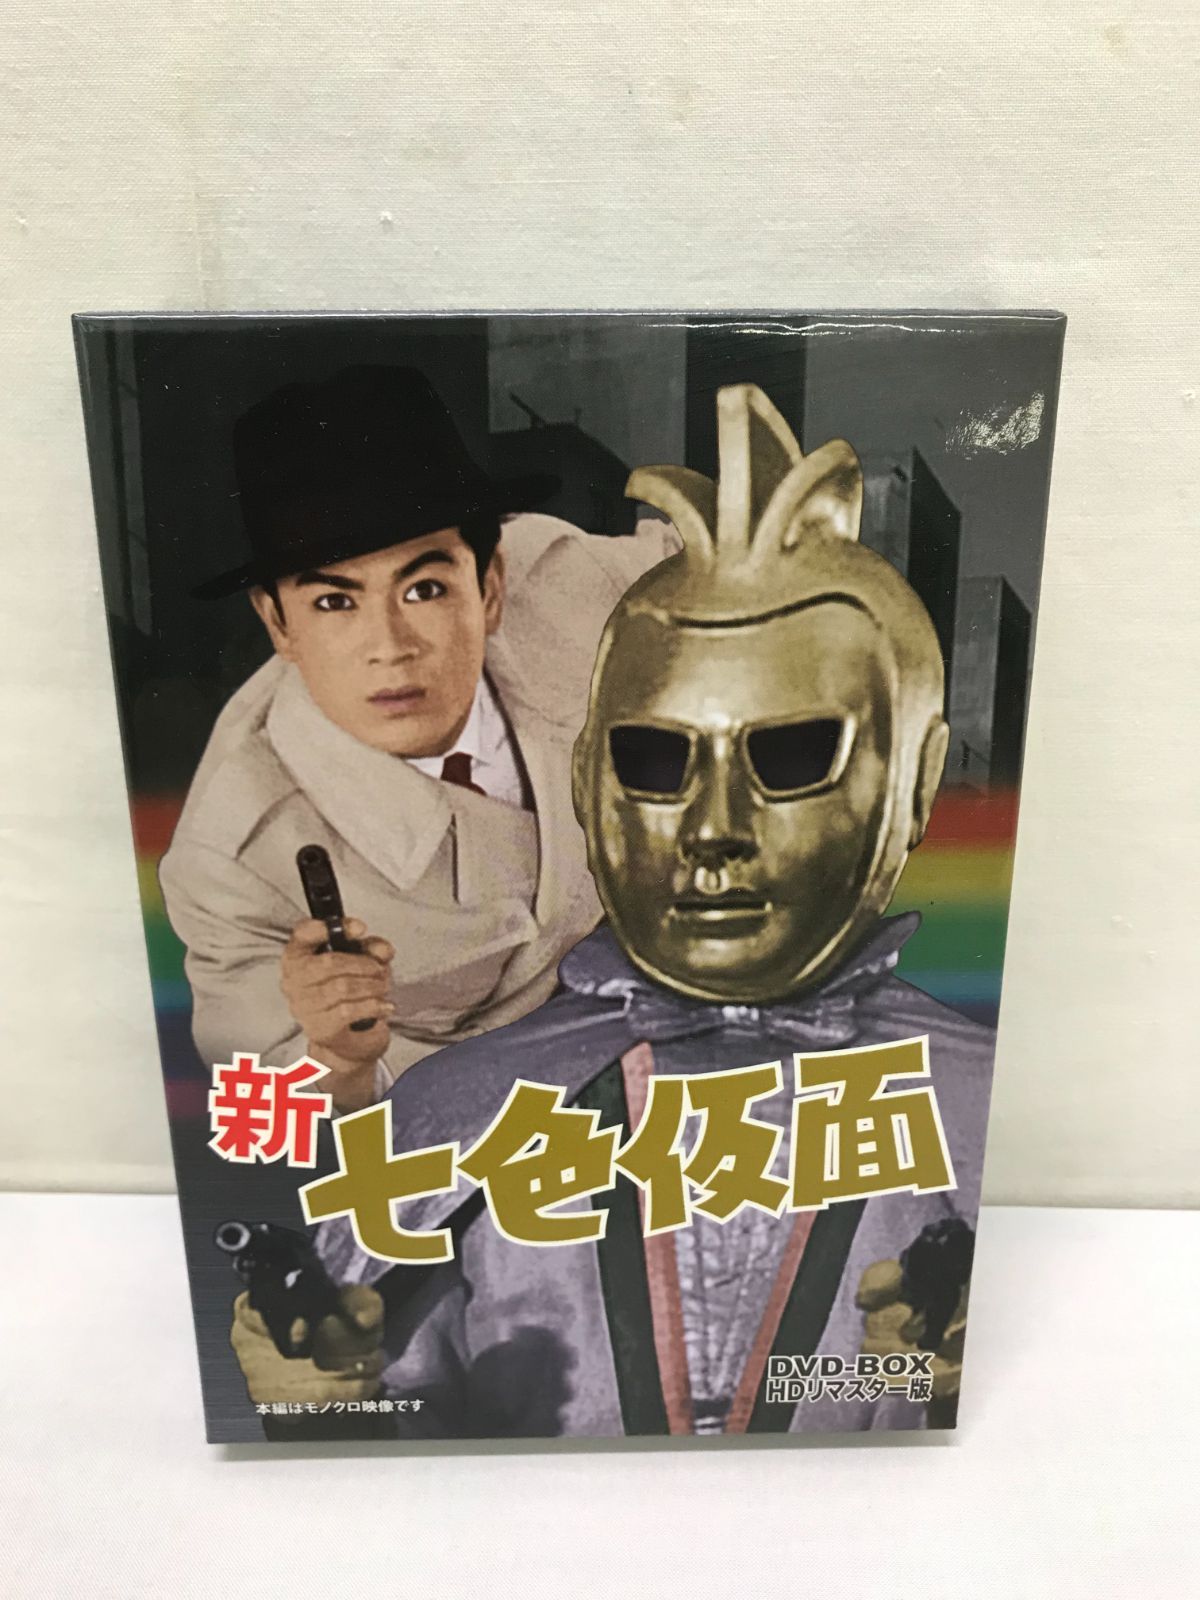 新 七色仮面 DVD‐BOX HDリマスター版 806 - カメレオンクラブ下松店